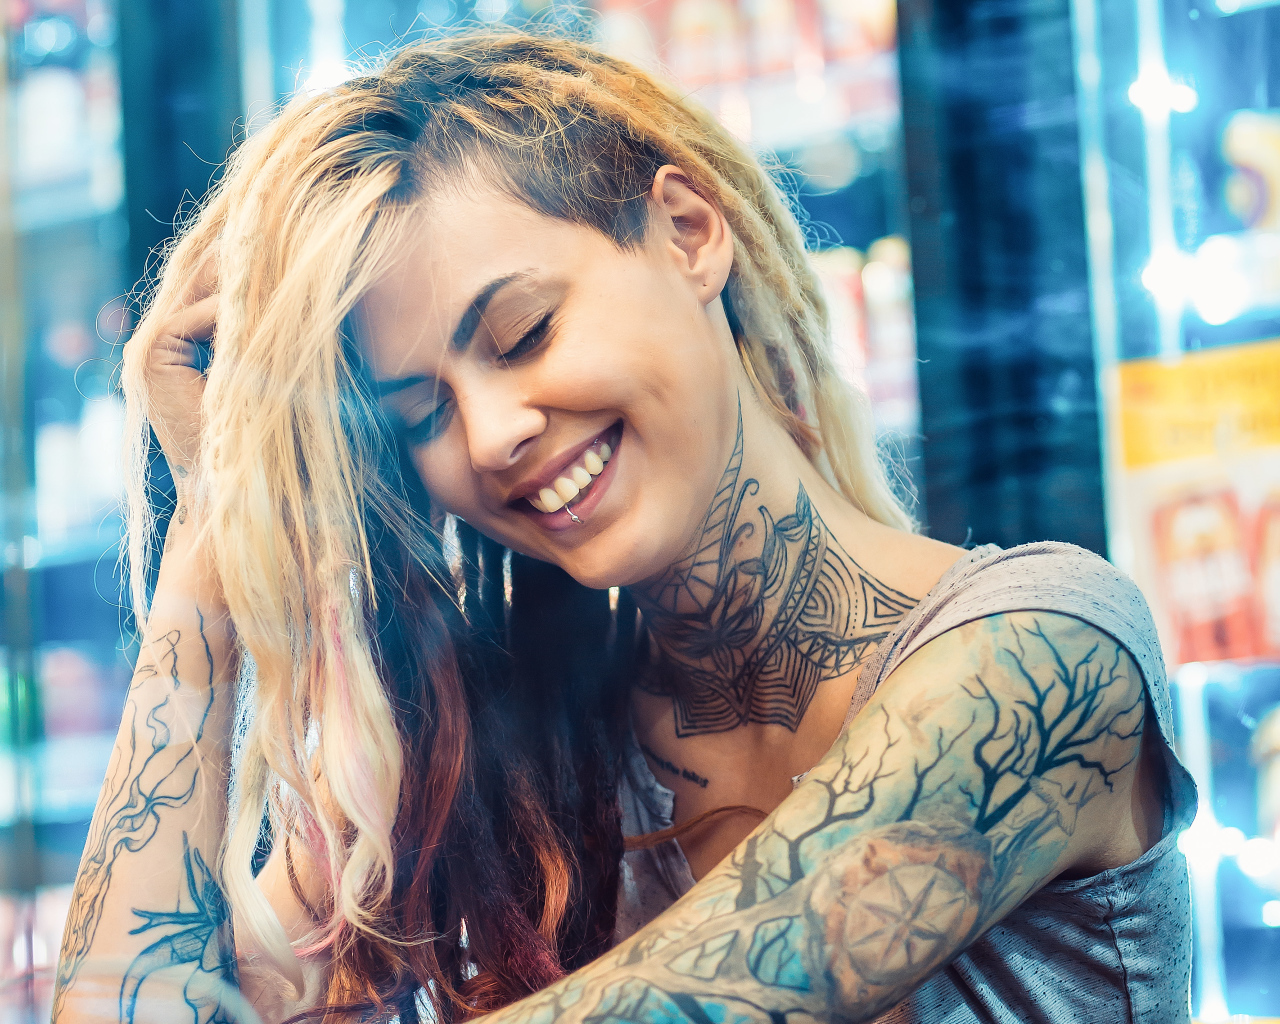 Улыбающаяся девушка с татуировками на теле